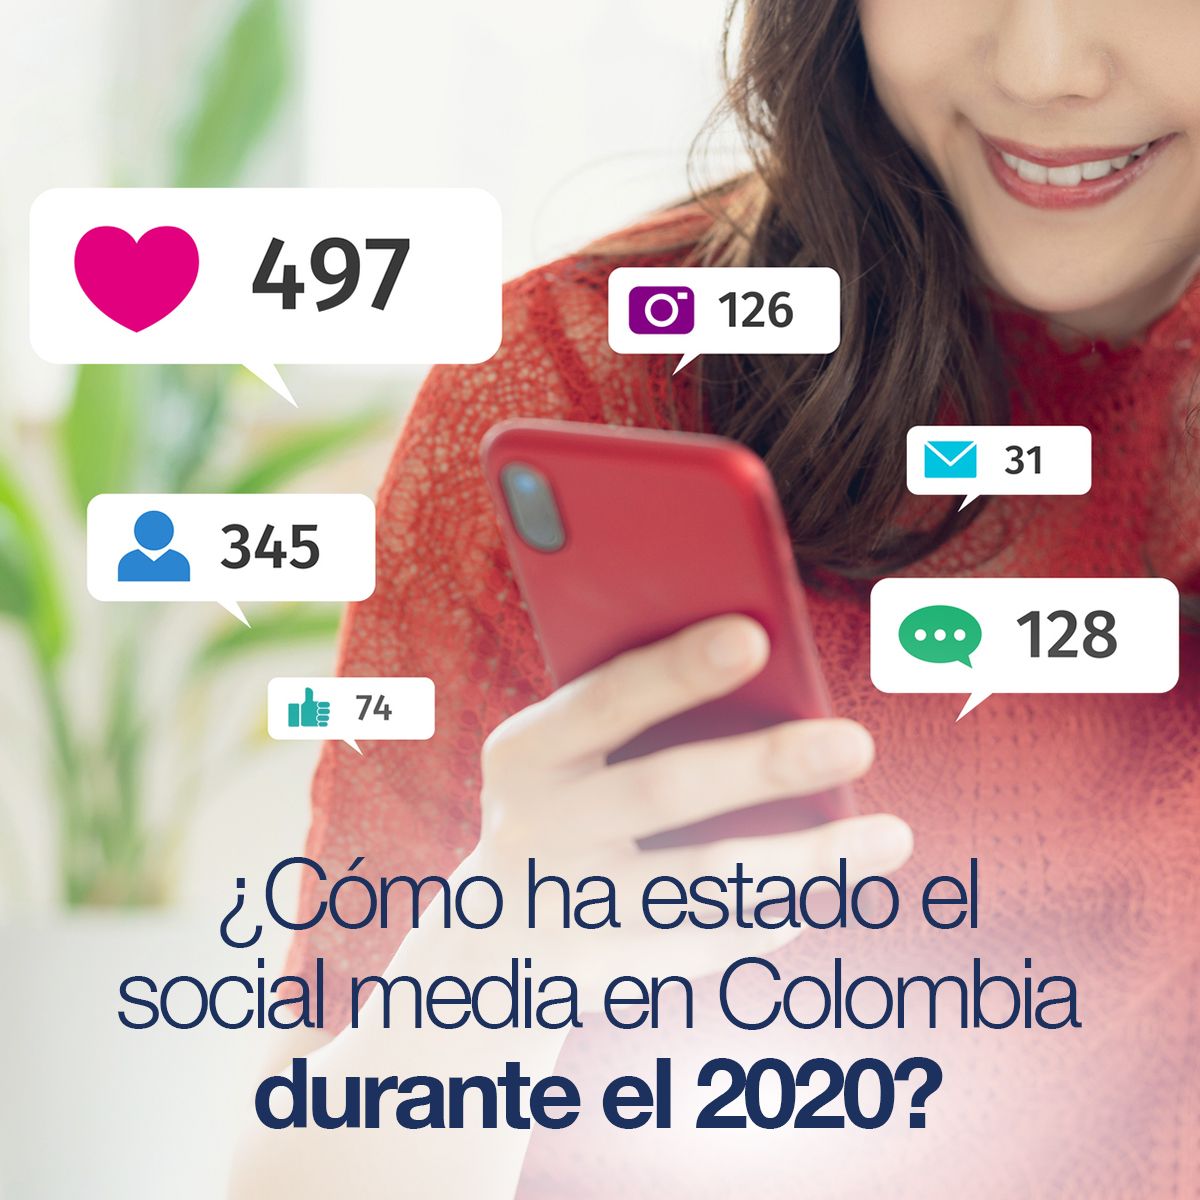 ¿Cómo ha estado el social media en Colombia durante el 2020?